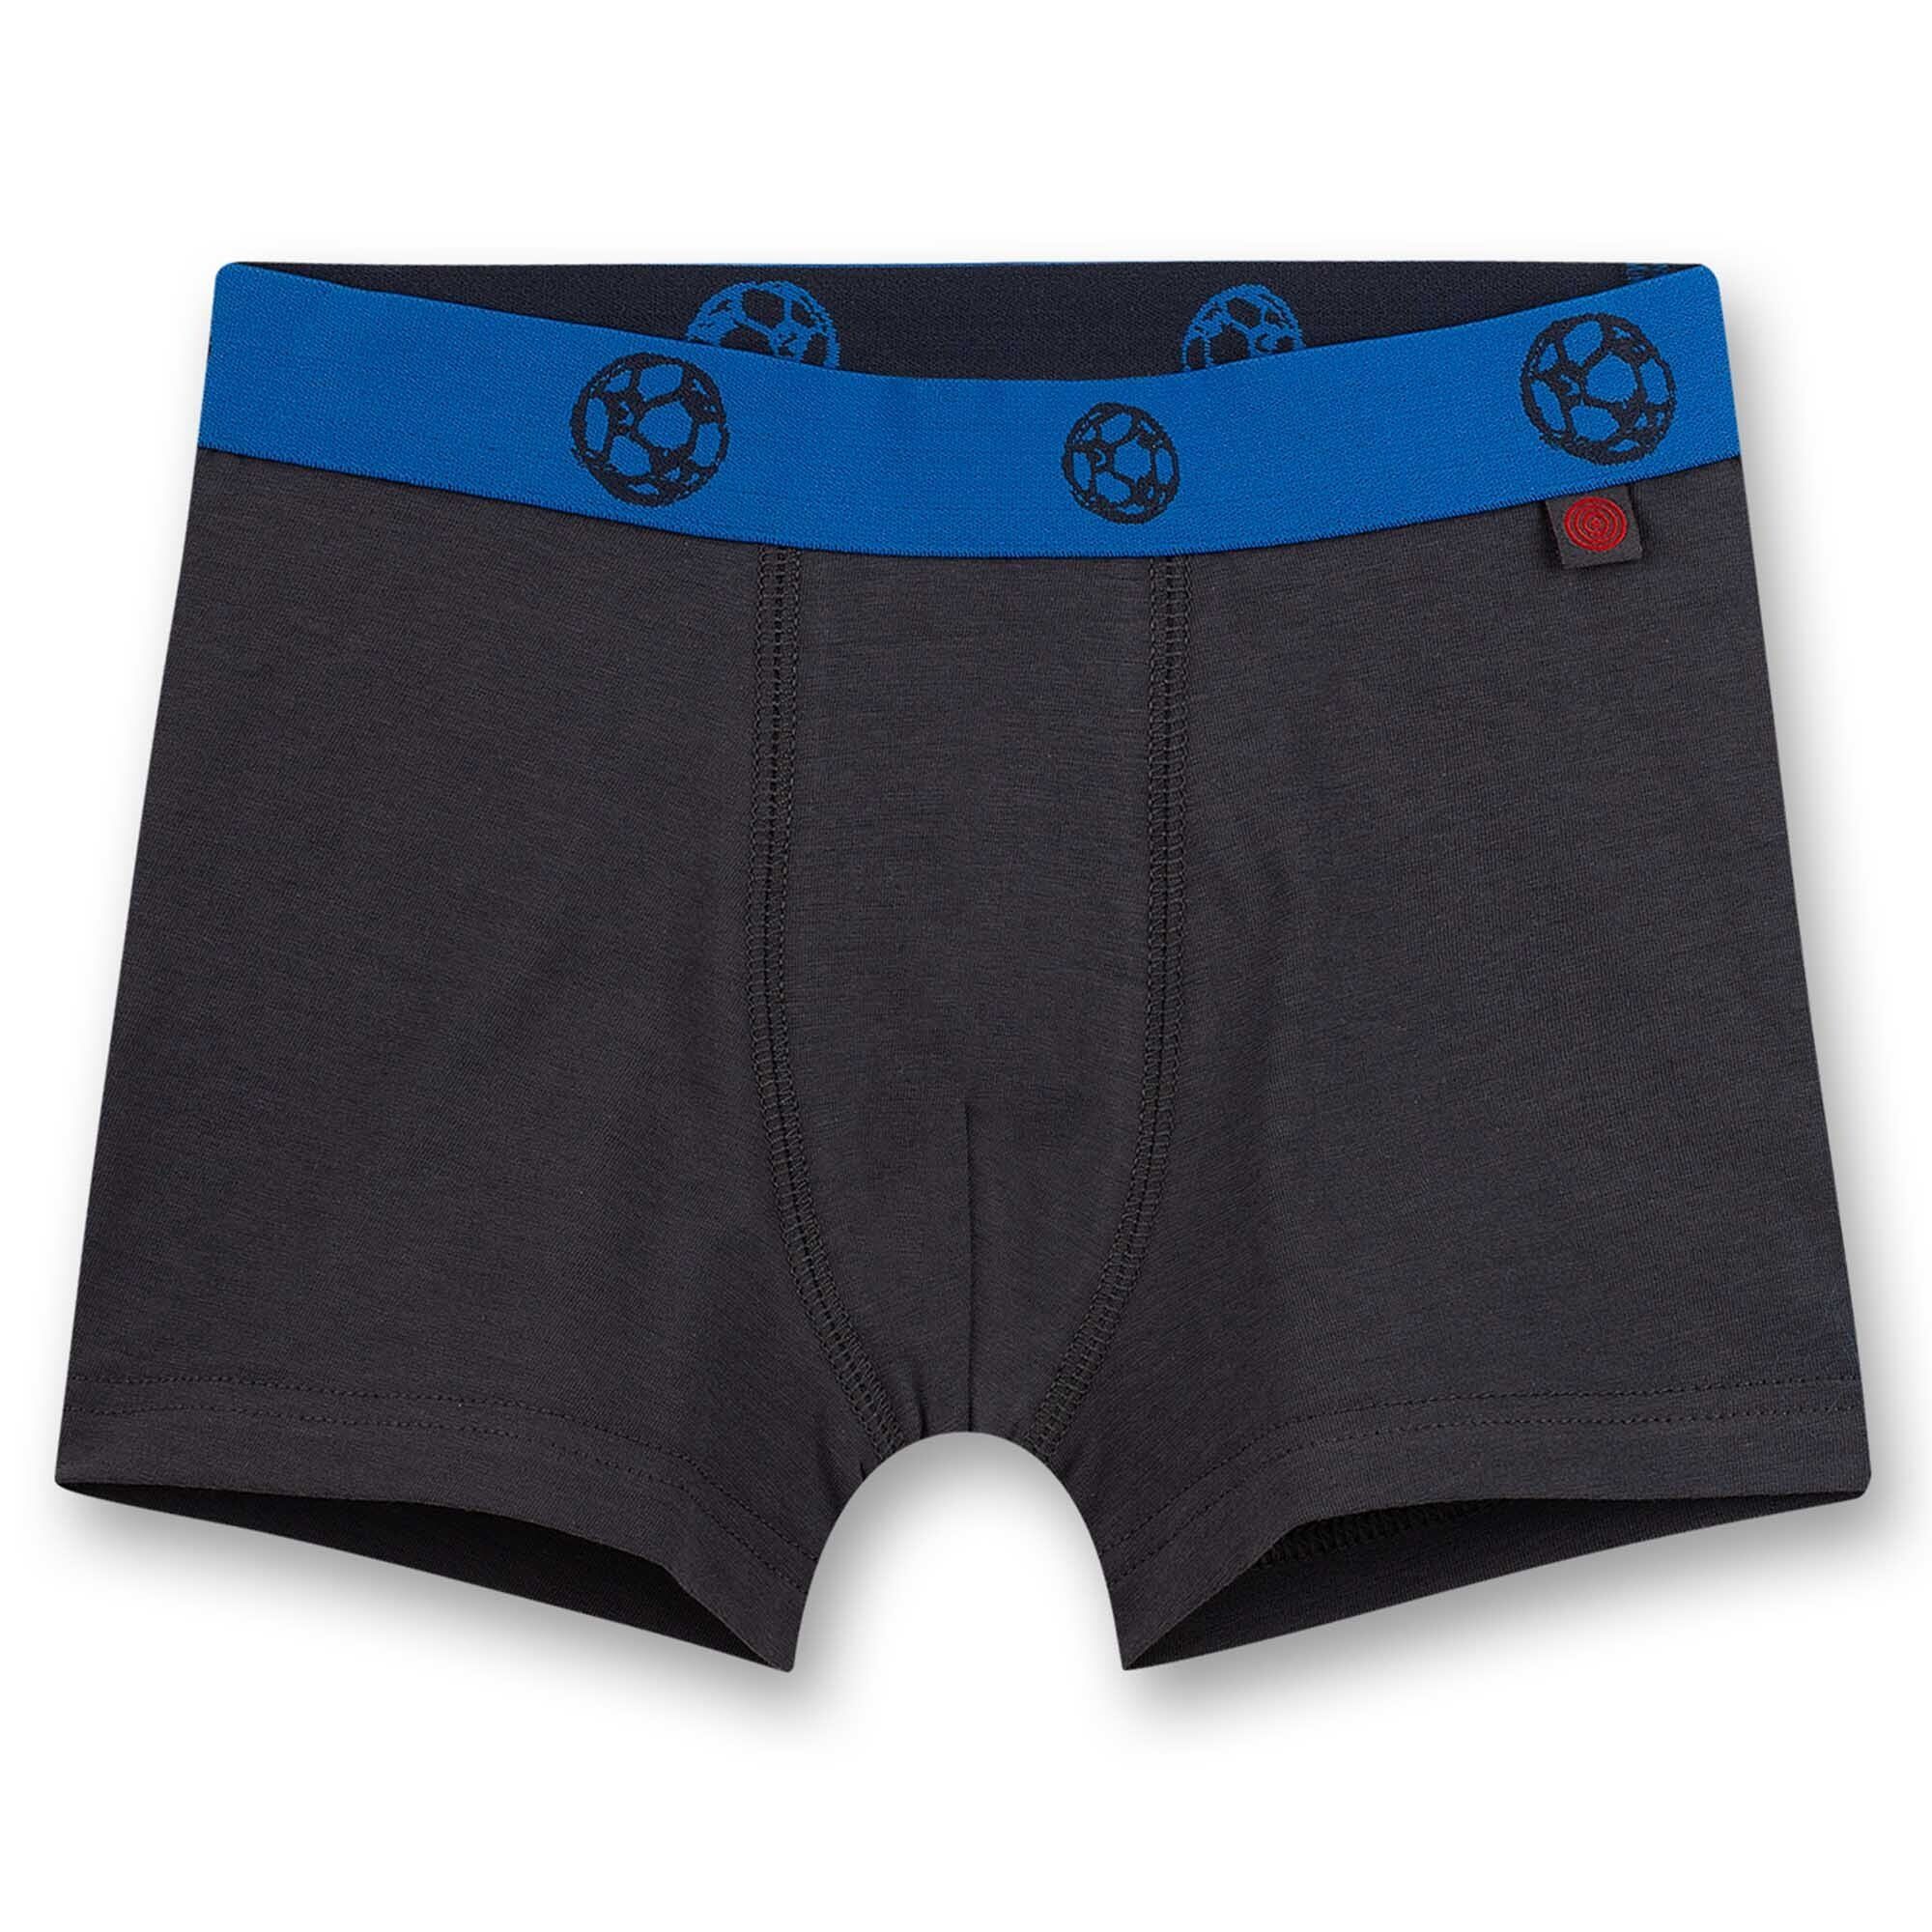 Pants, Shorts, Jungen Boxer Unterhosen Sanetta Pack 2er -